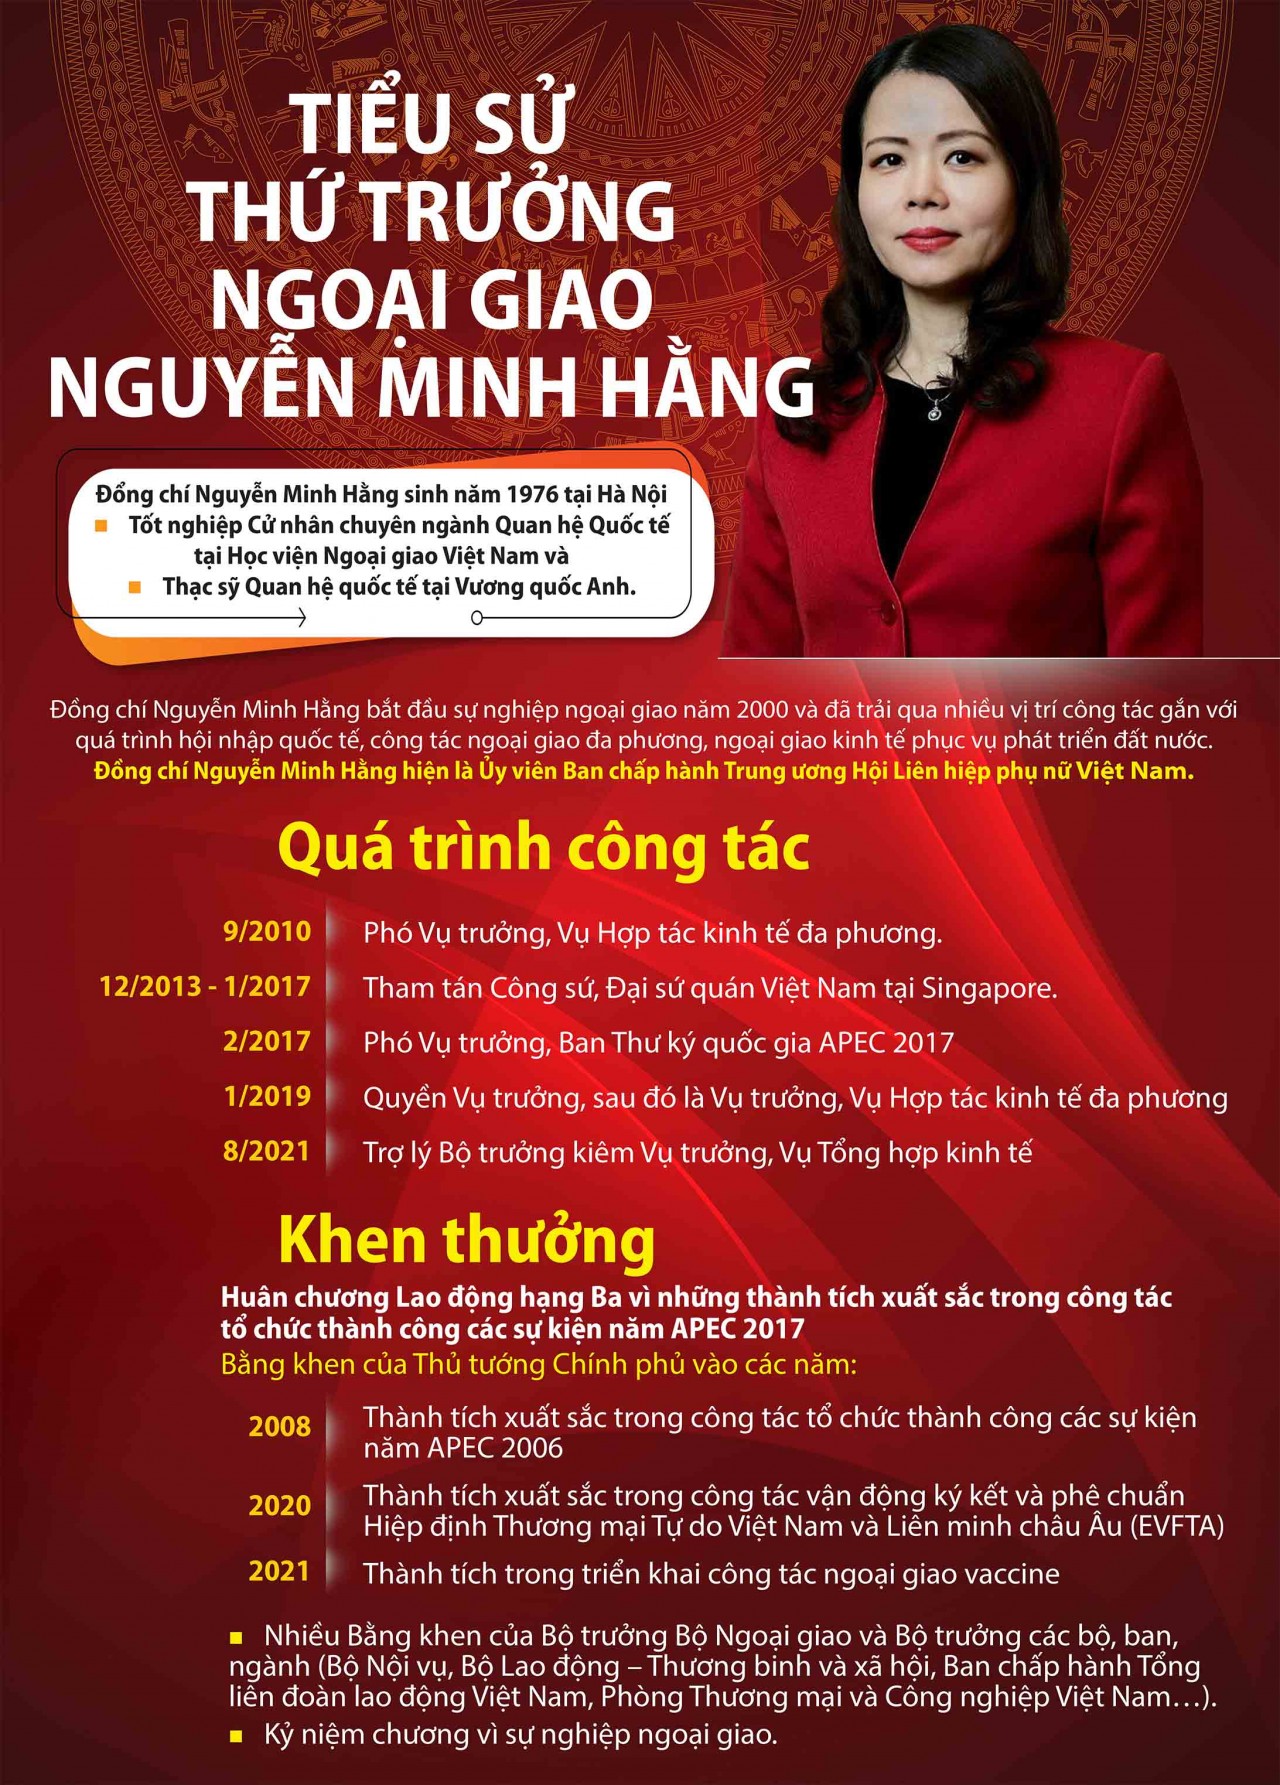 Tiểu sử Thứ trưởng Ngoại giao Nguyễn Minh Hằng. (Nguồn: Báo TG&VN)